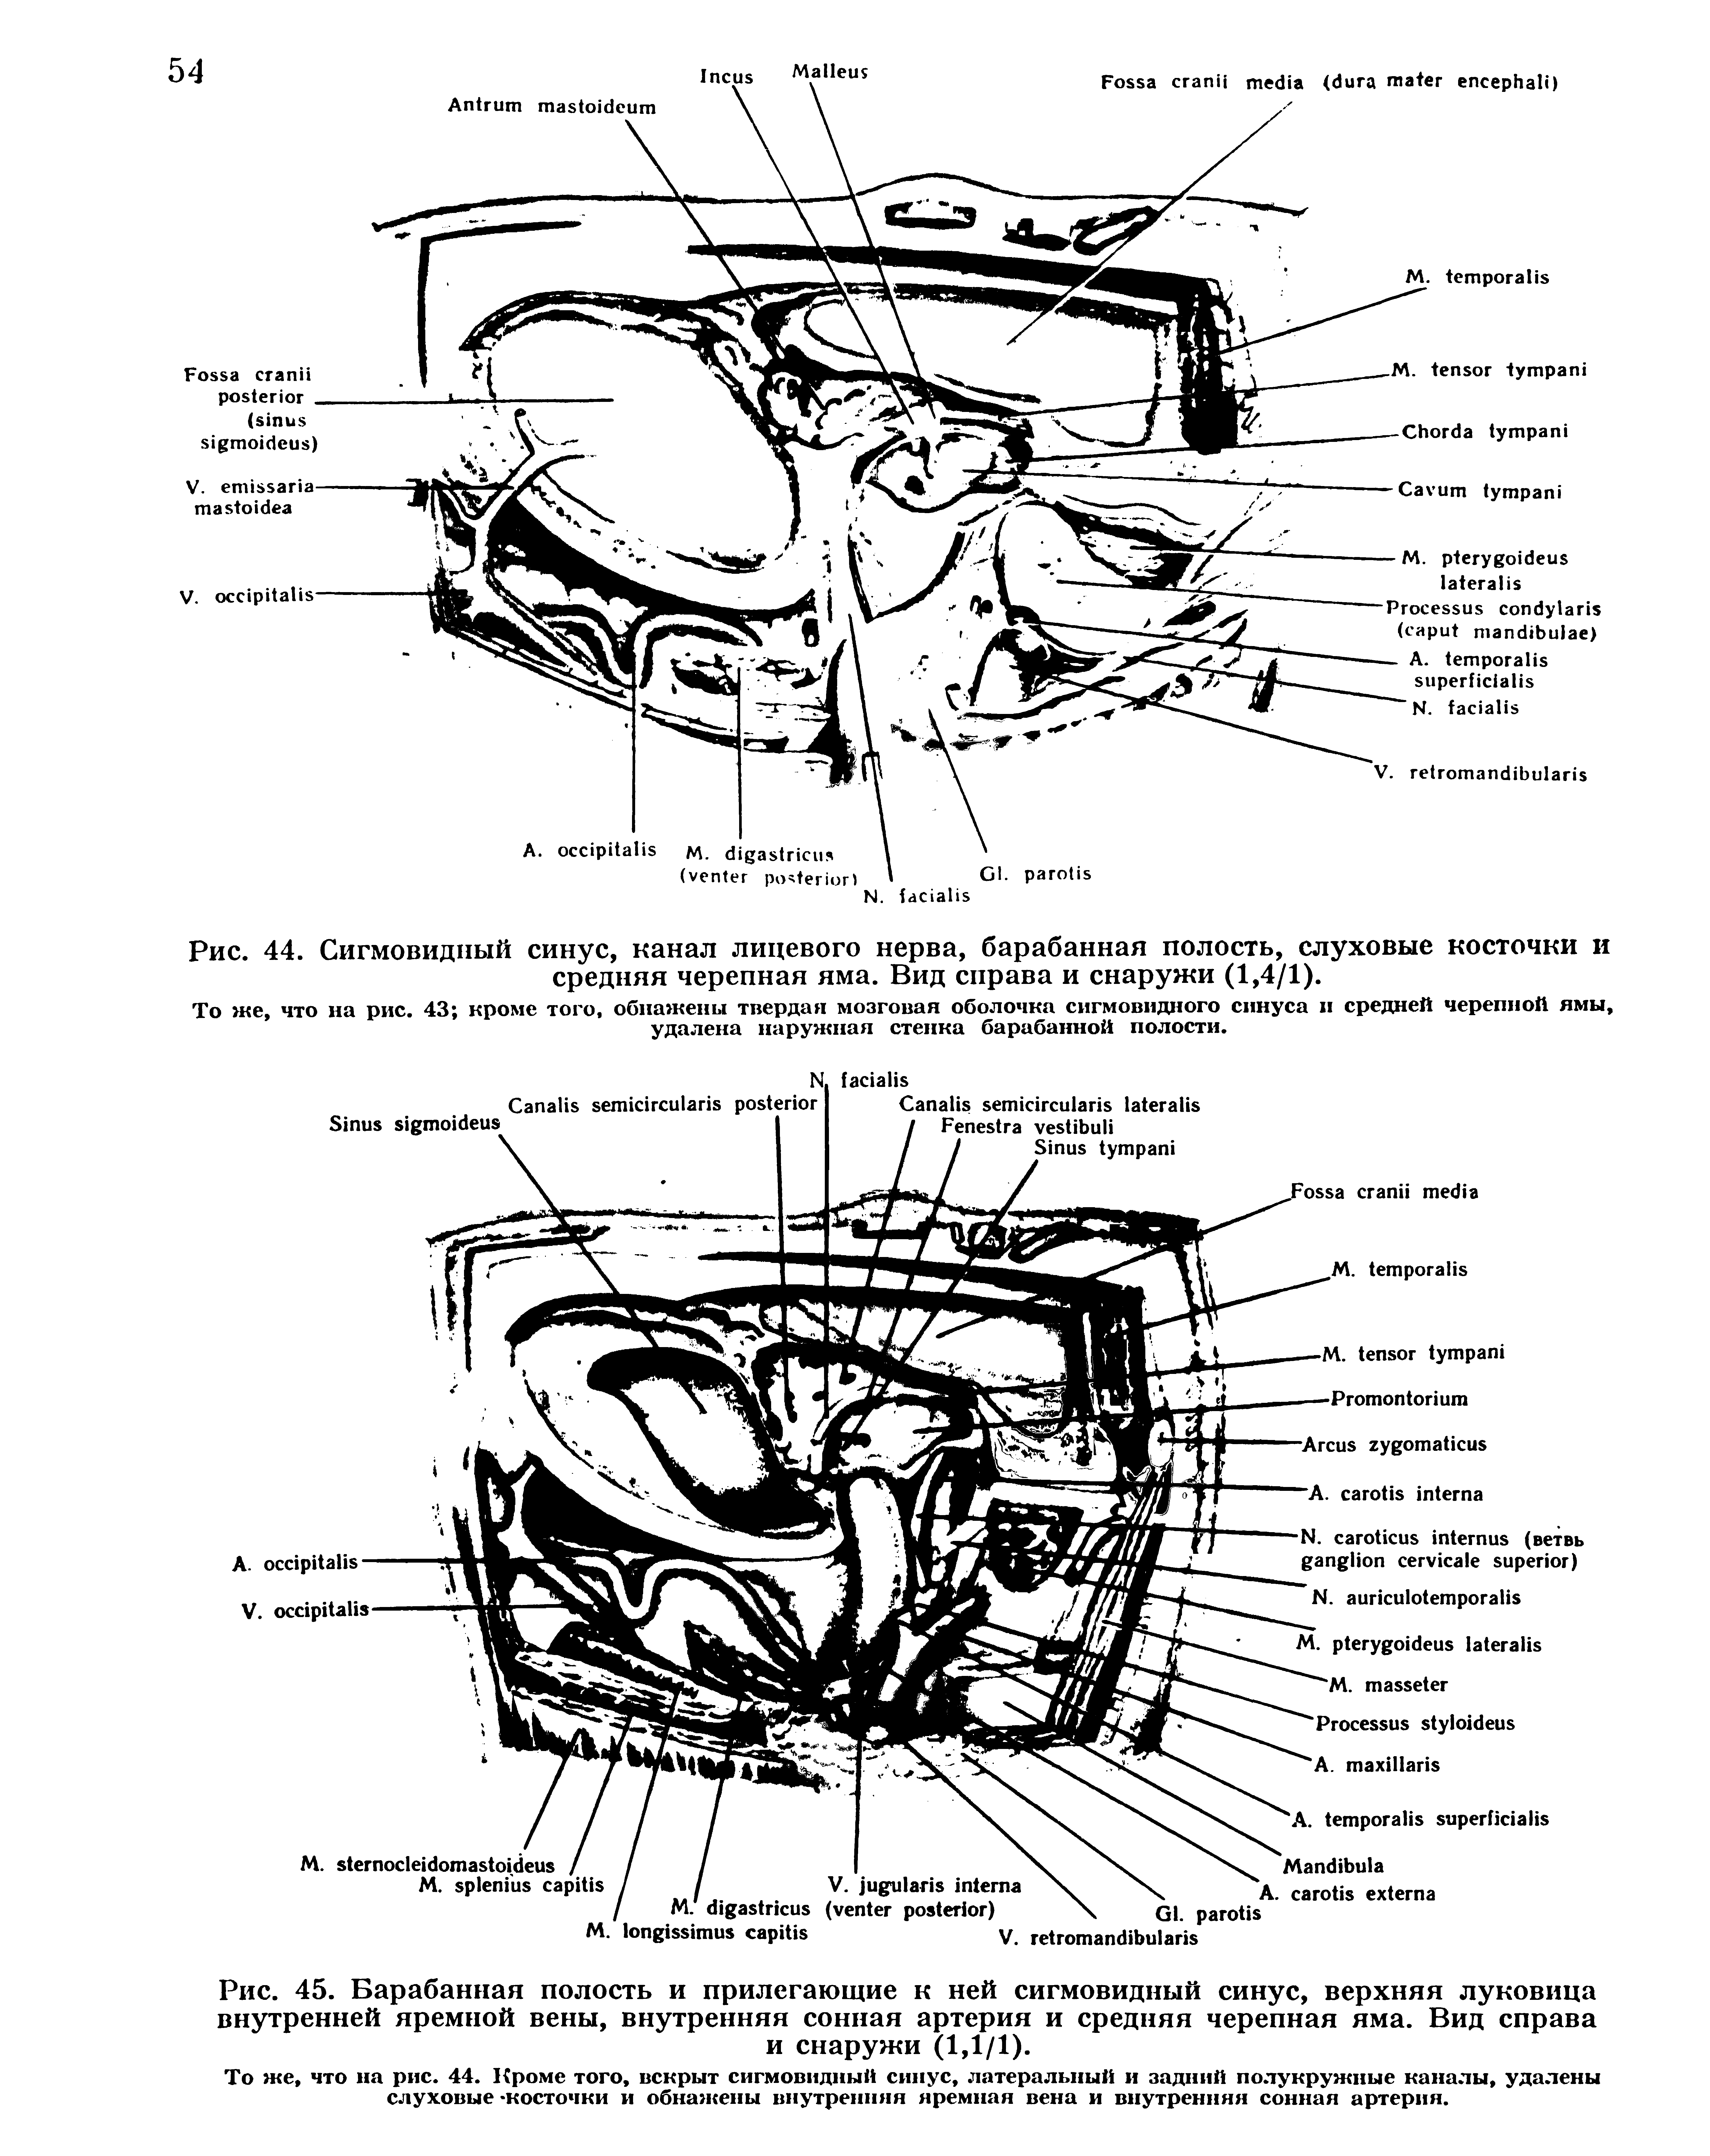 Рис. 45. Барабанная полость и прилегающие к ней сигмовидный синус, верхняя луковица внутренней яремной вены, внутренняя сонная артерия и средняя черепная яма. Вид справа и снаружи (1,1/1).